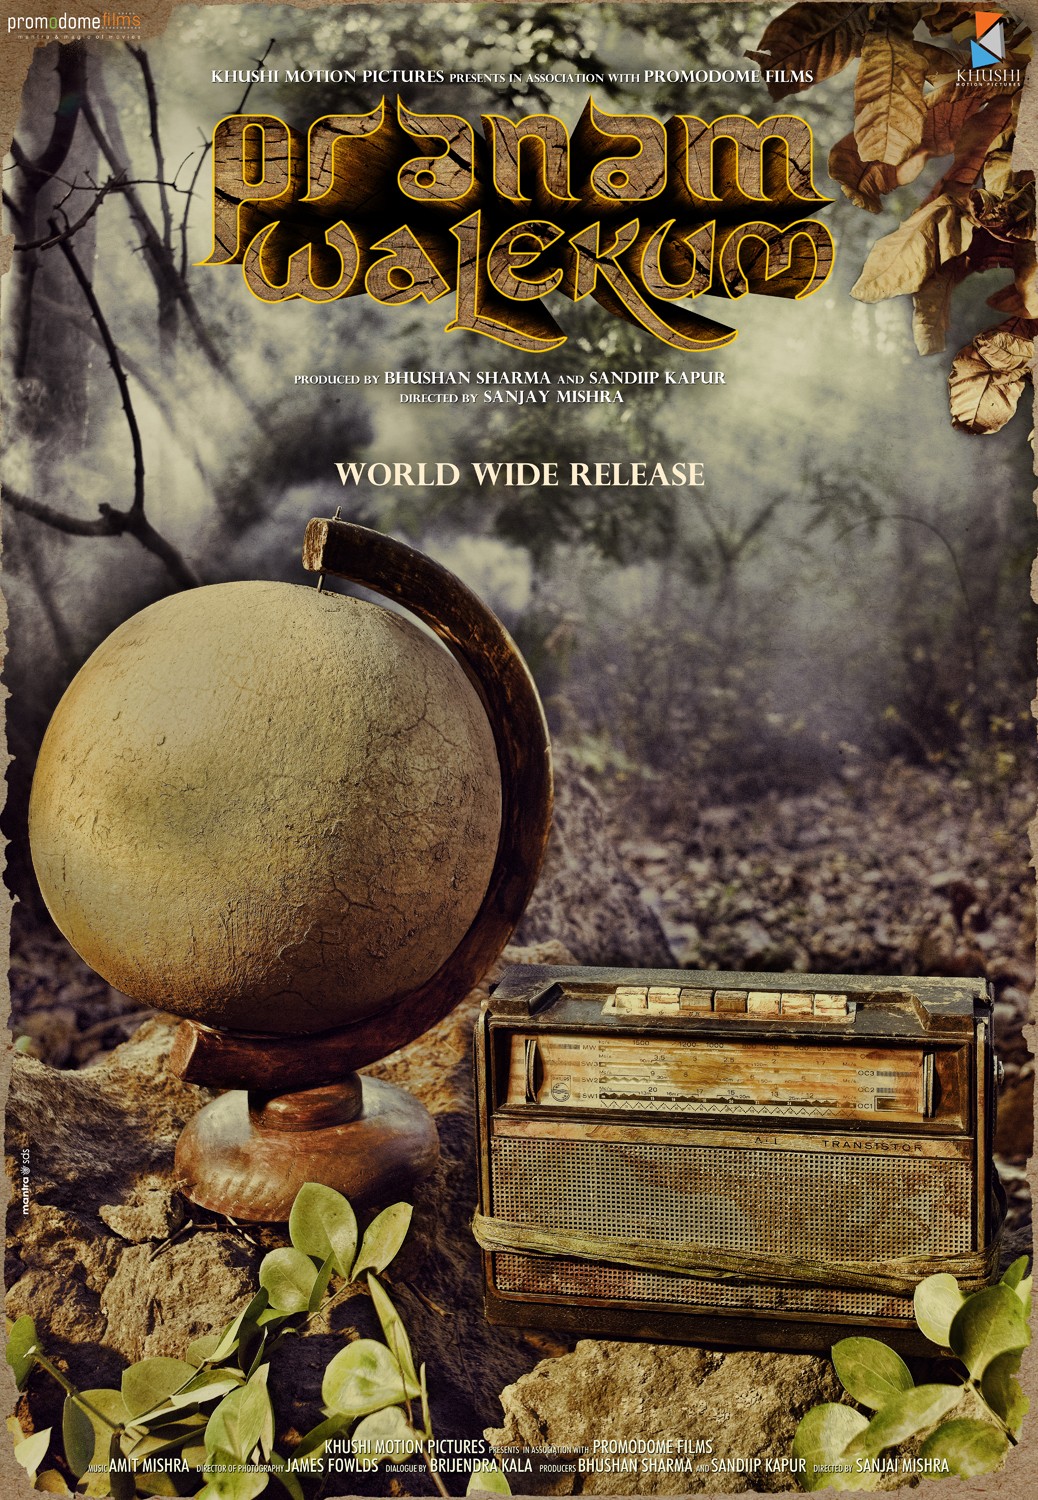 Extra Large Movie Poster Image for Pranam Walekum 